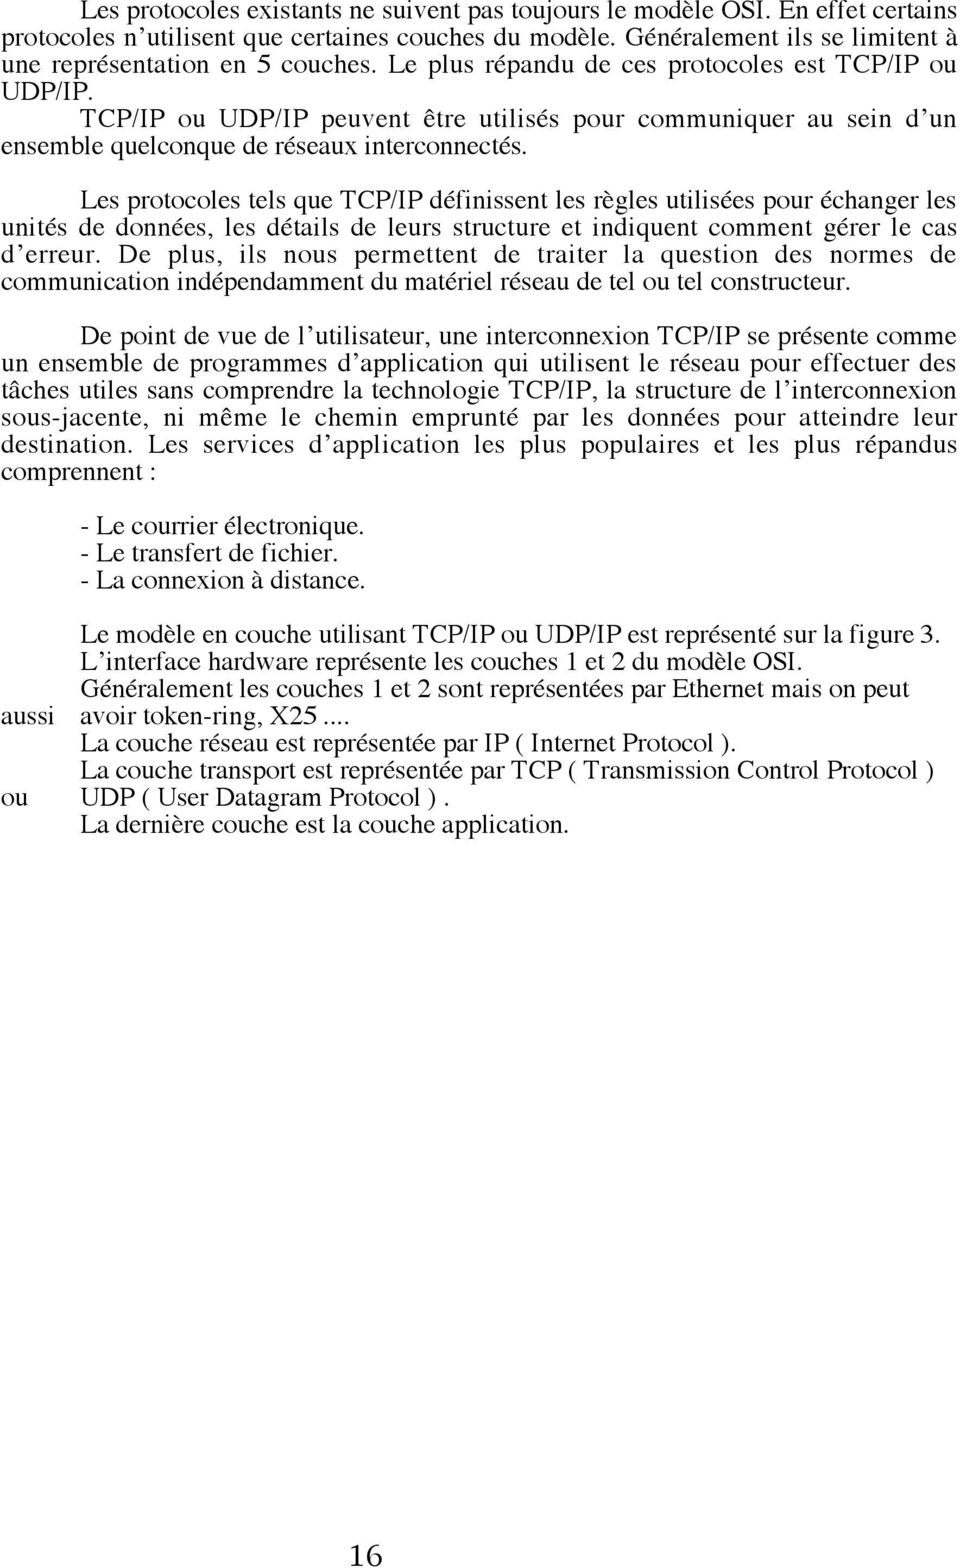 TCP/IP ou UDP/IP peuvent tre utilisžs pour communiquer au sein dõun ensemble quelconque de ržseaux interconnectžs.